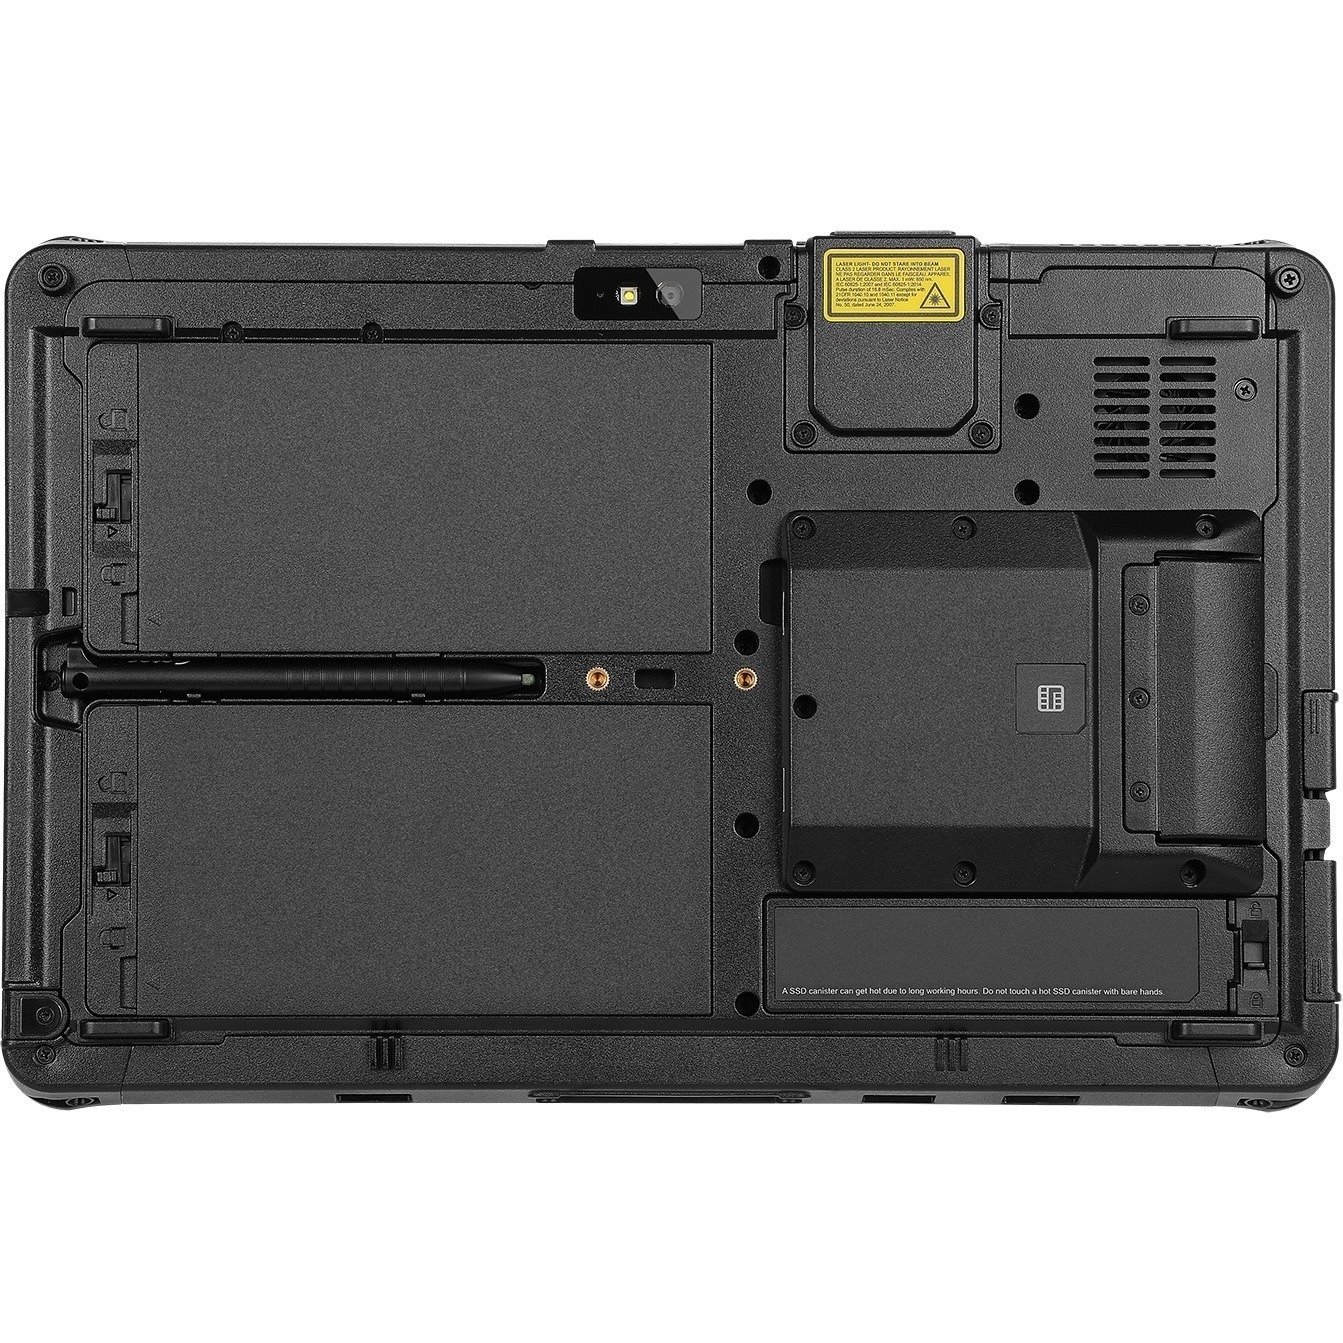 Getac F110 Rugged Tablet - 29.5 cm (11.6") Full HD - 8 GB - 256 GB SSD - Windows 11 Pro